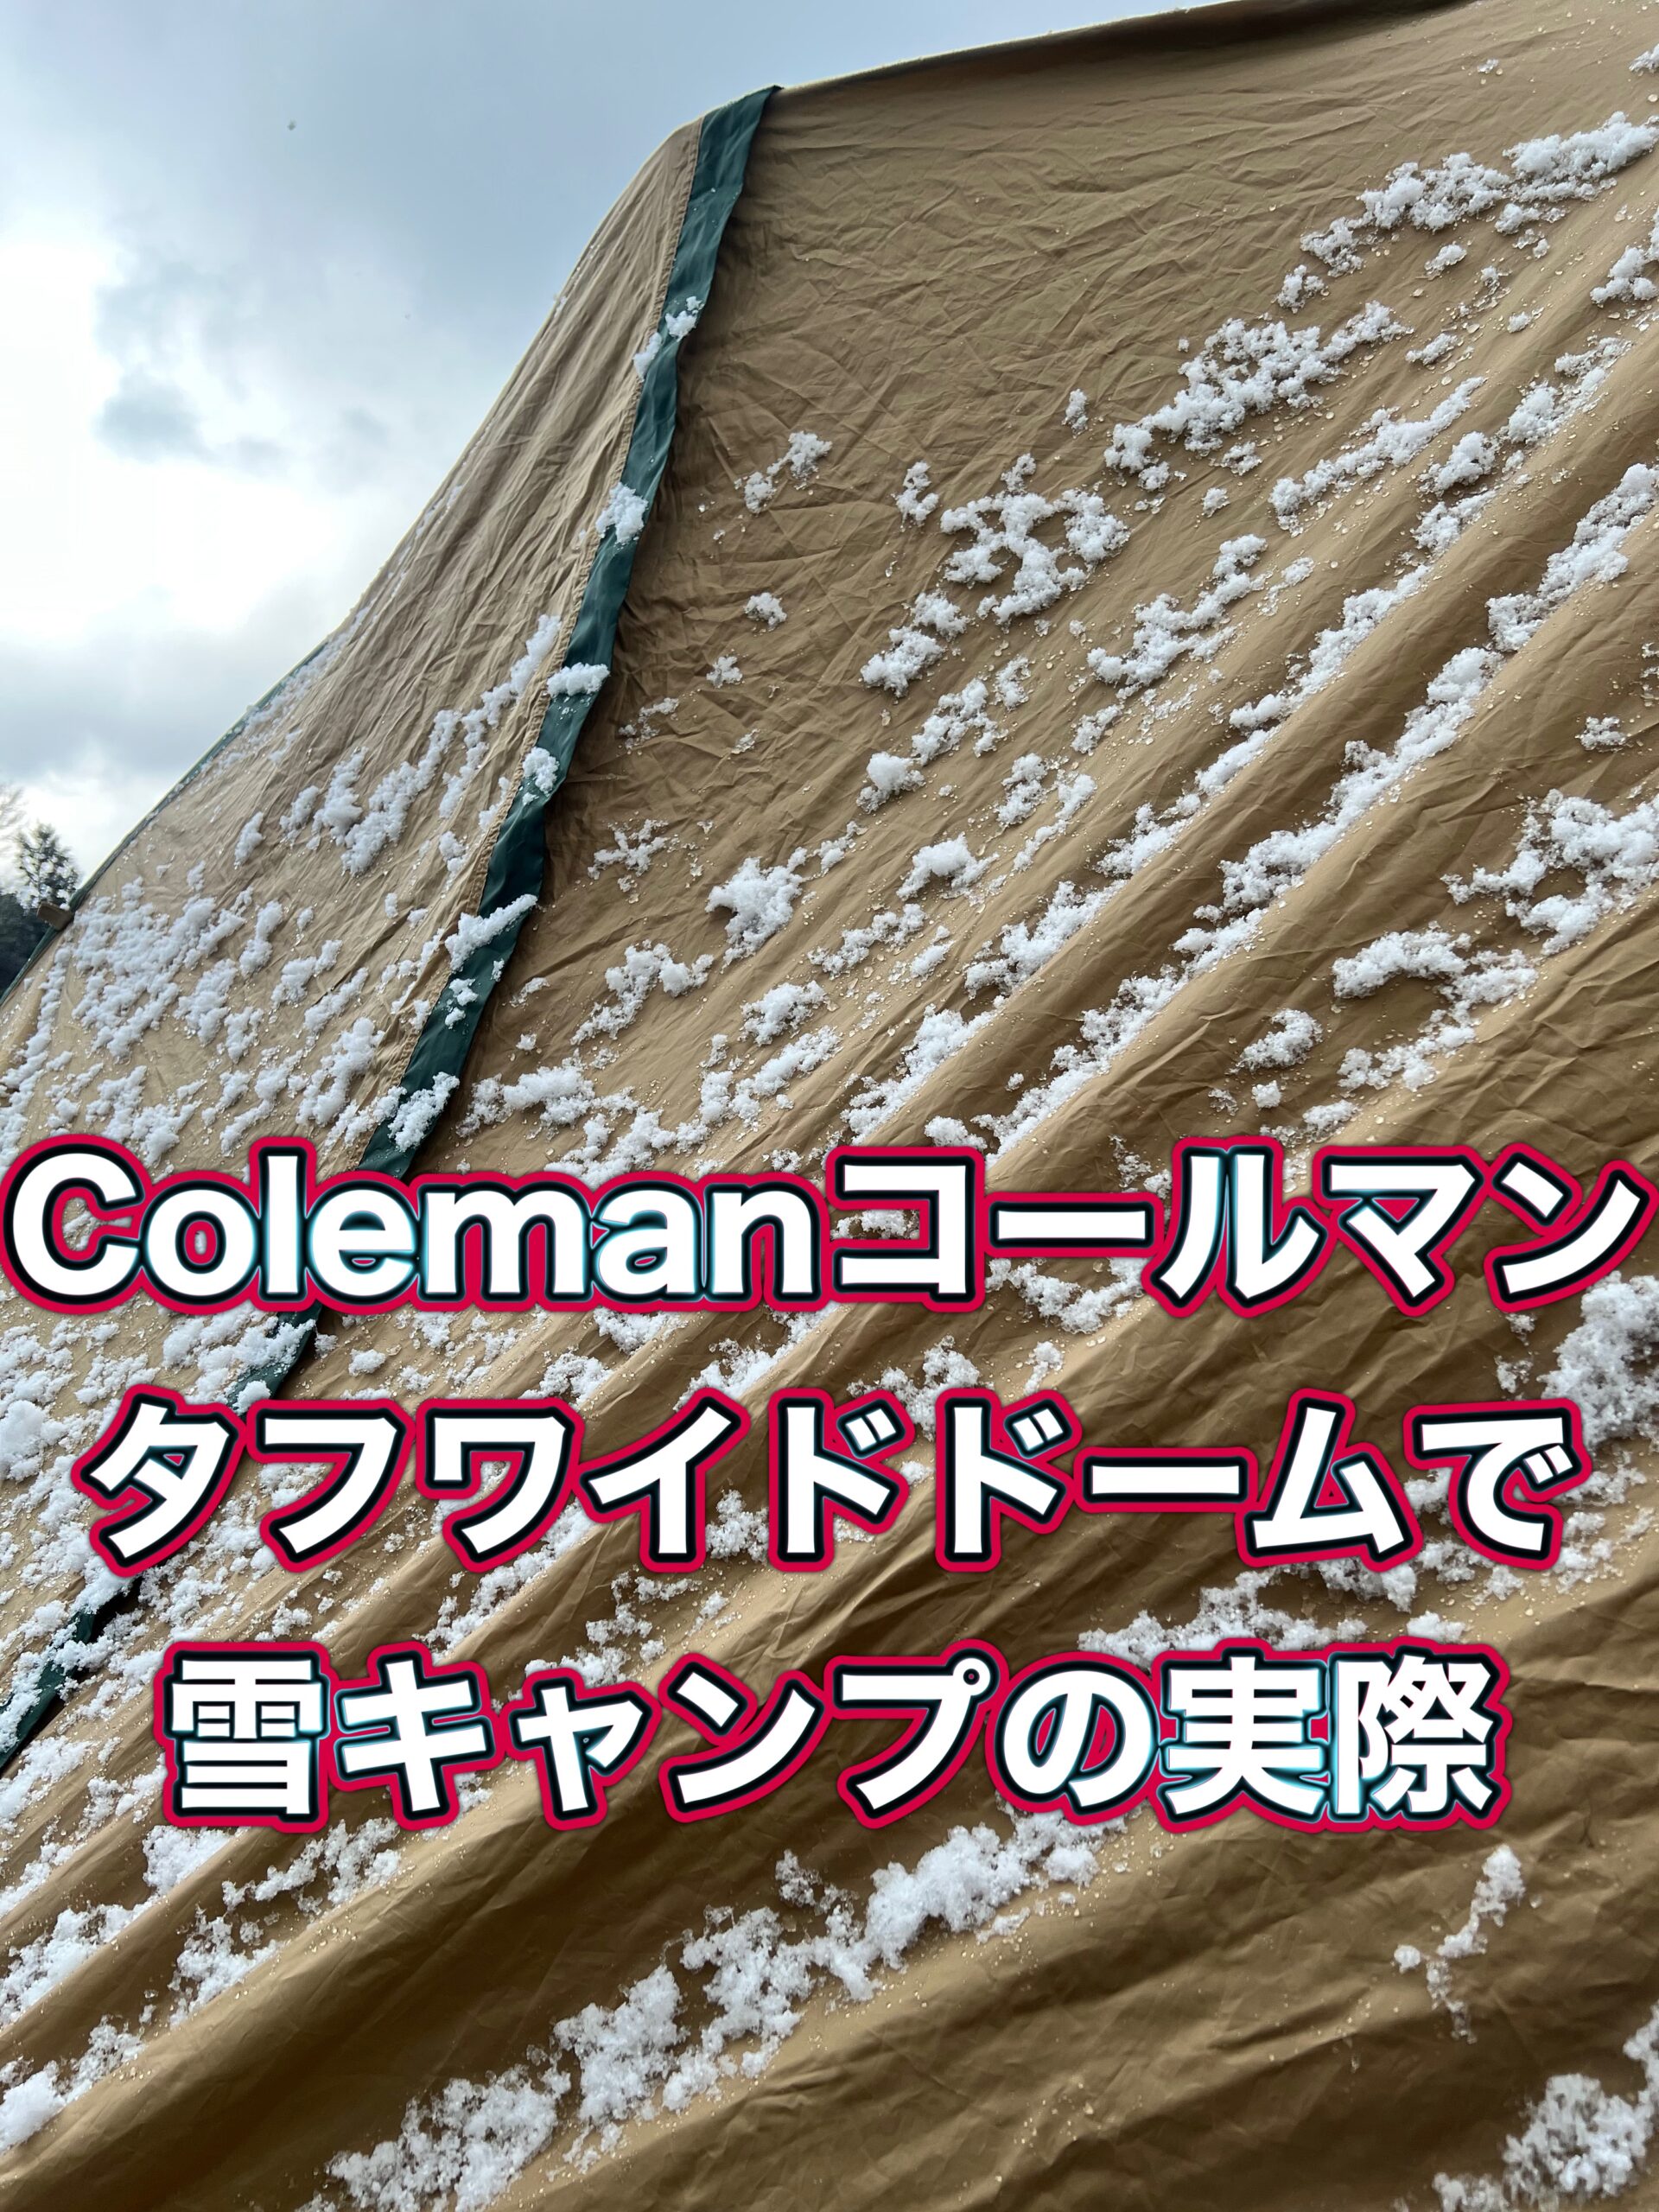 Colemanコールマンのタフワイドドームで雪キャンプの実際